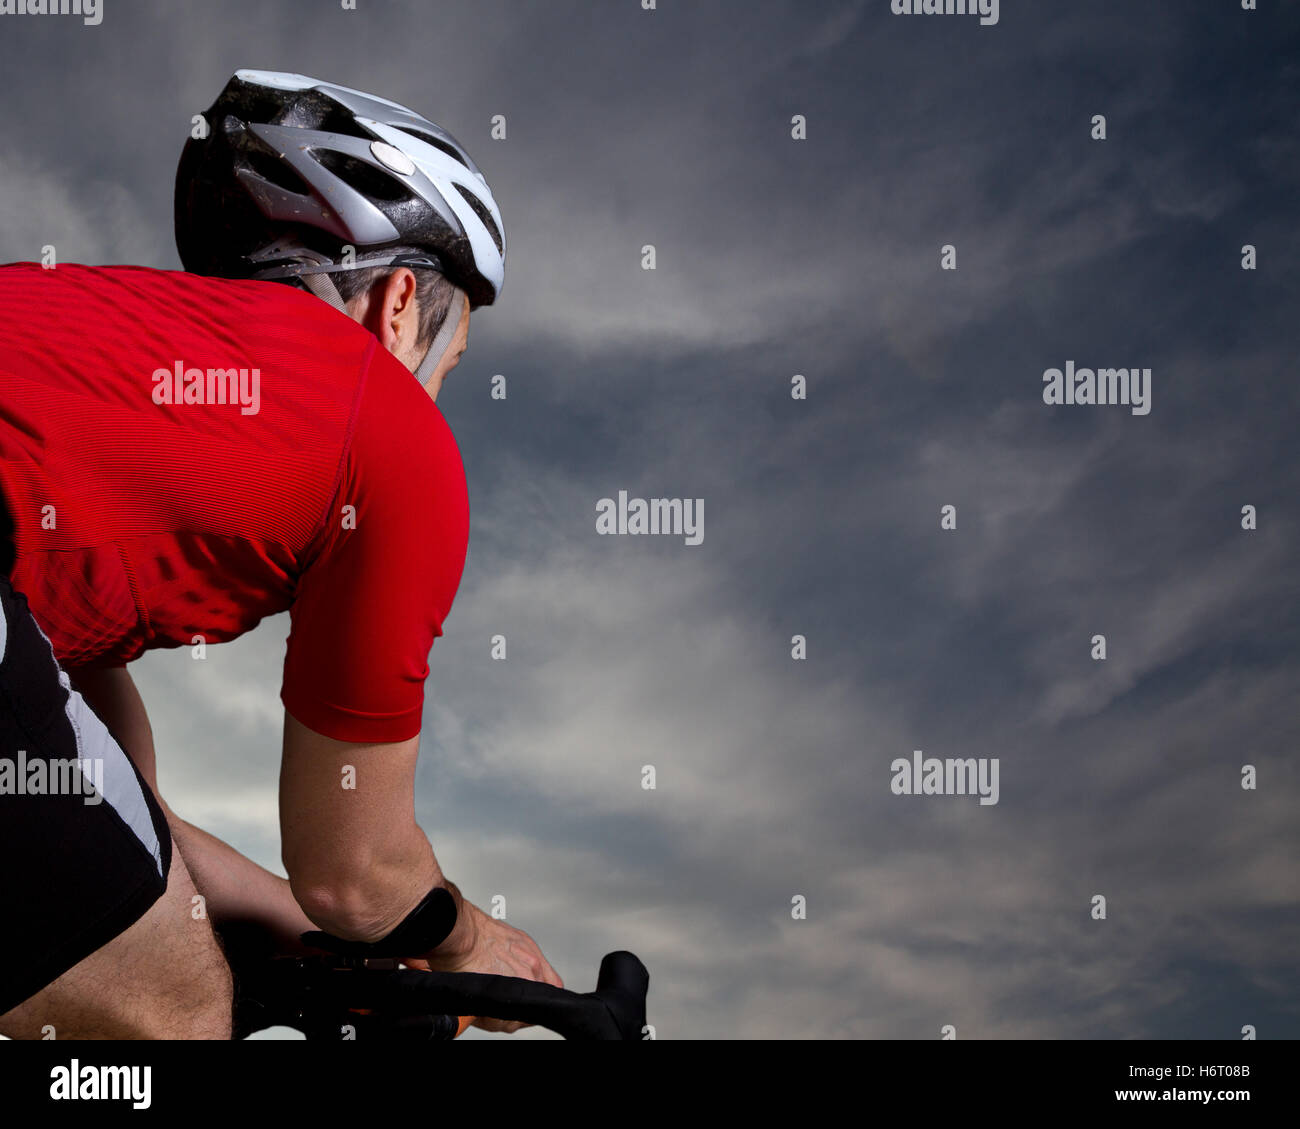 triathlete on bicycle Stock Photo